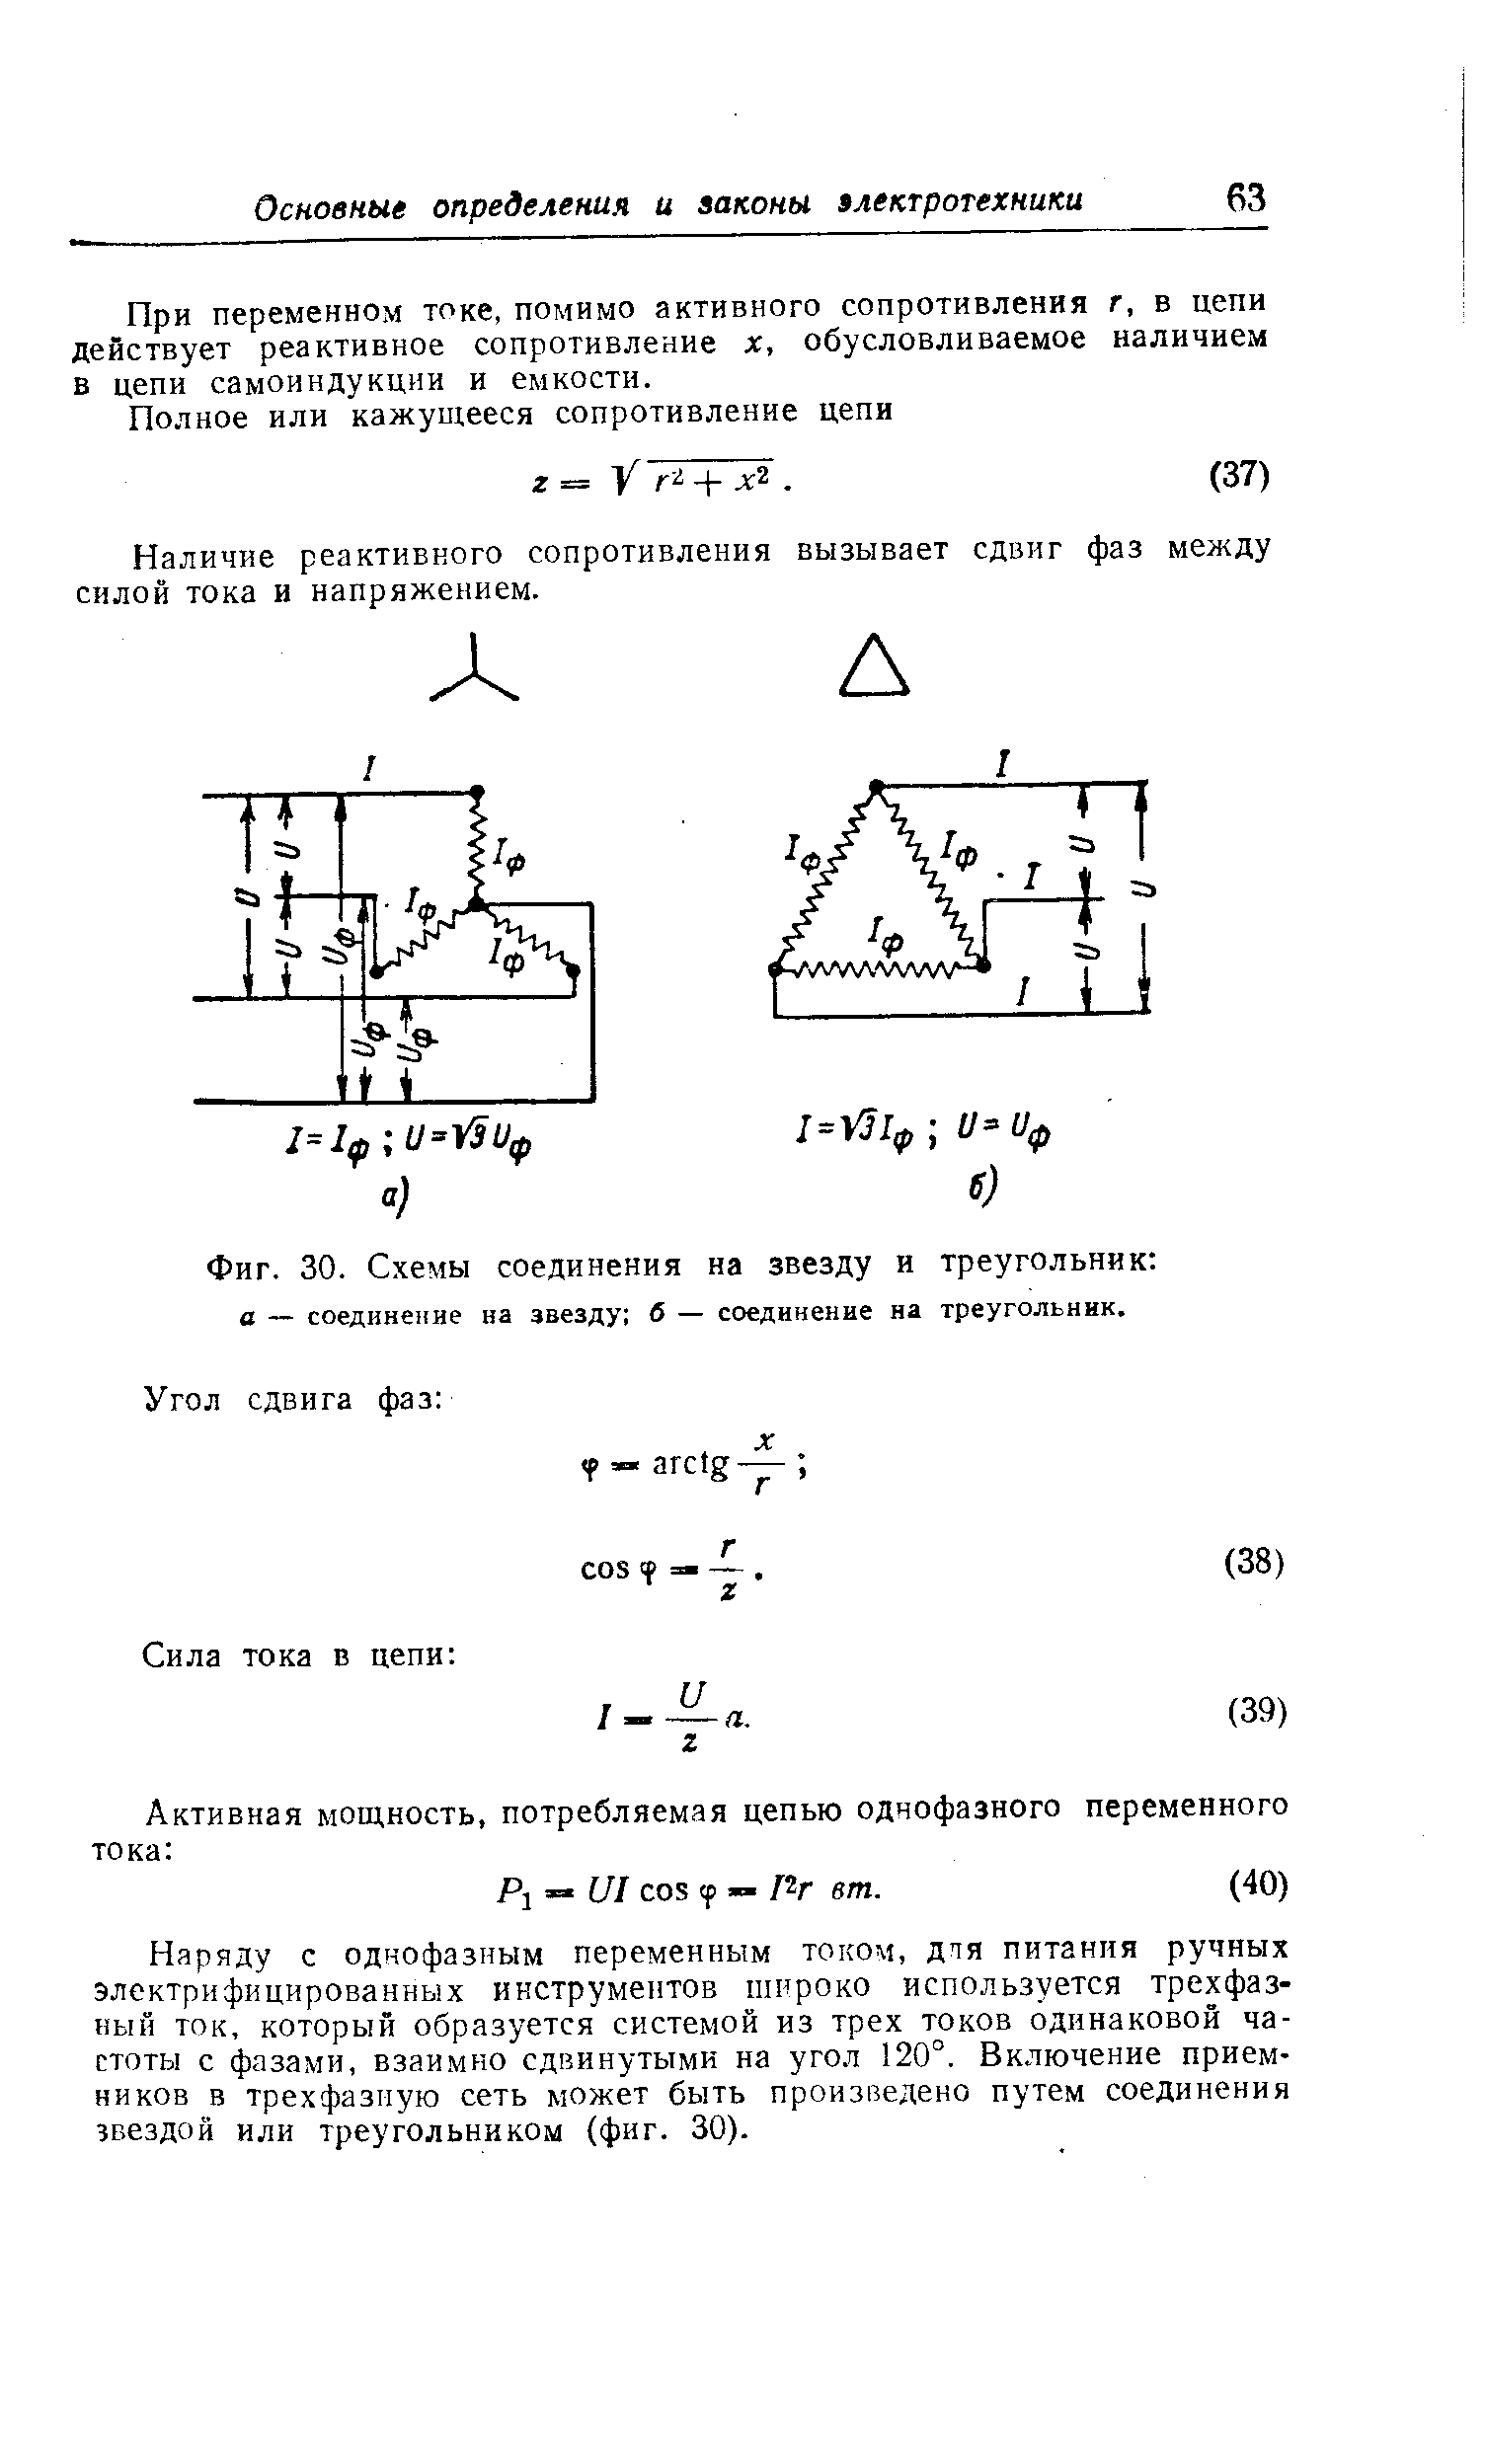 Фиг. 30. <a href="/info/100984">Схемы соединения</a> на звезду и треугольник 
